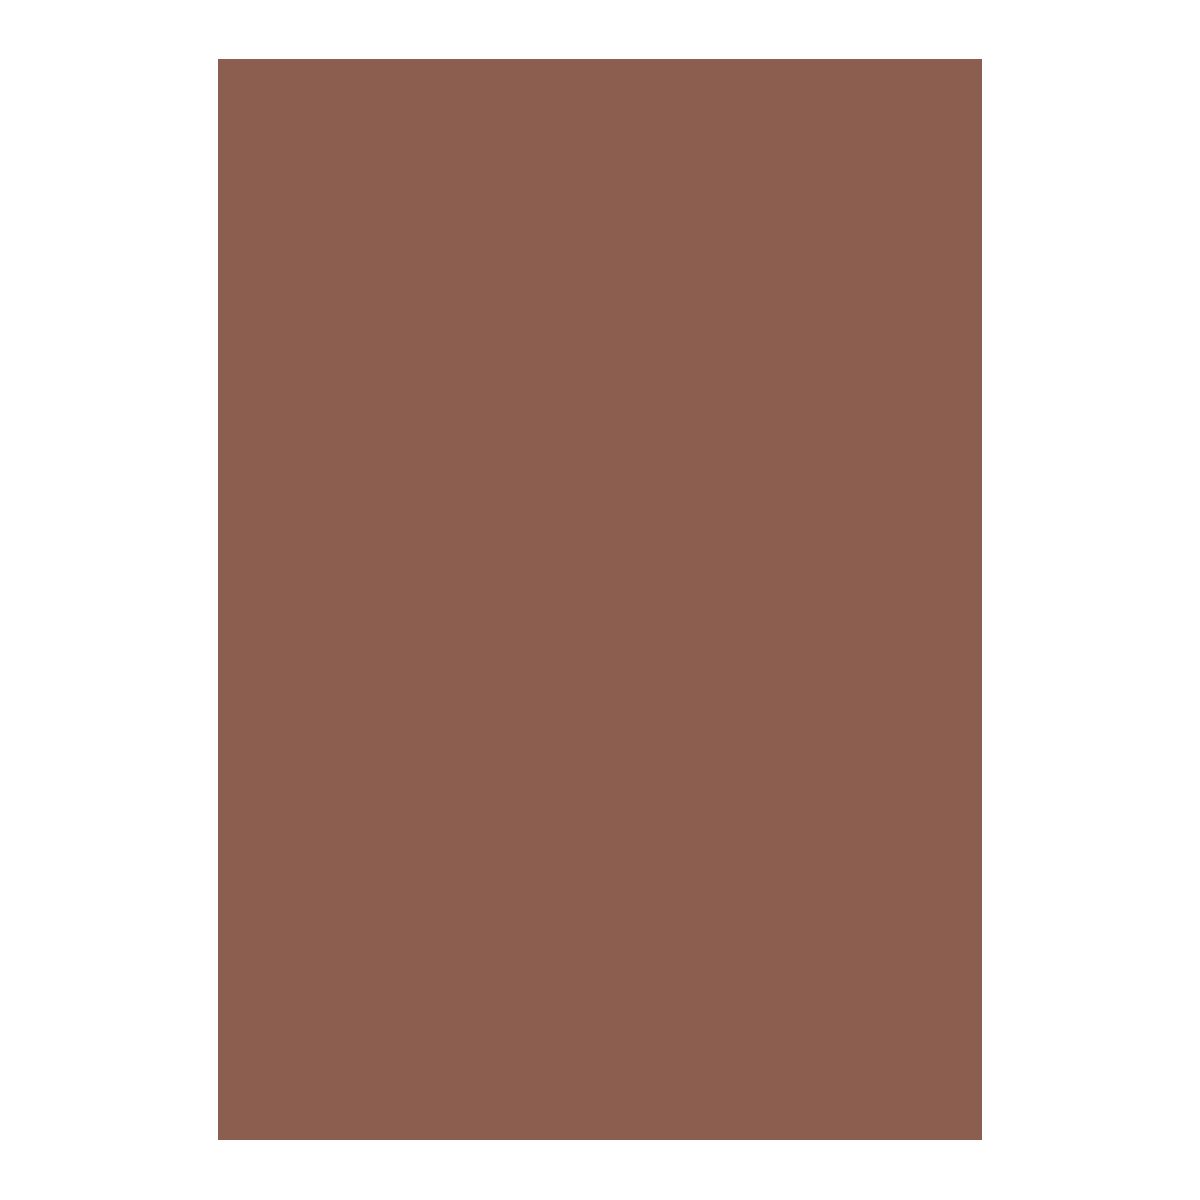 Arkusz piankowy Titanum Craft-Fun Series pianka dekoracyjna A4 5 szt. kolor: brązowy 5 ark. (6125)